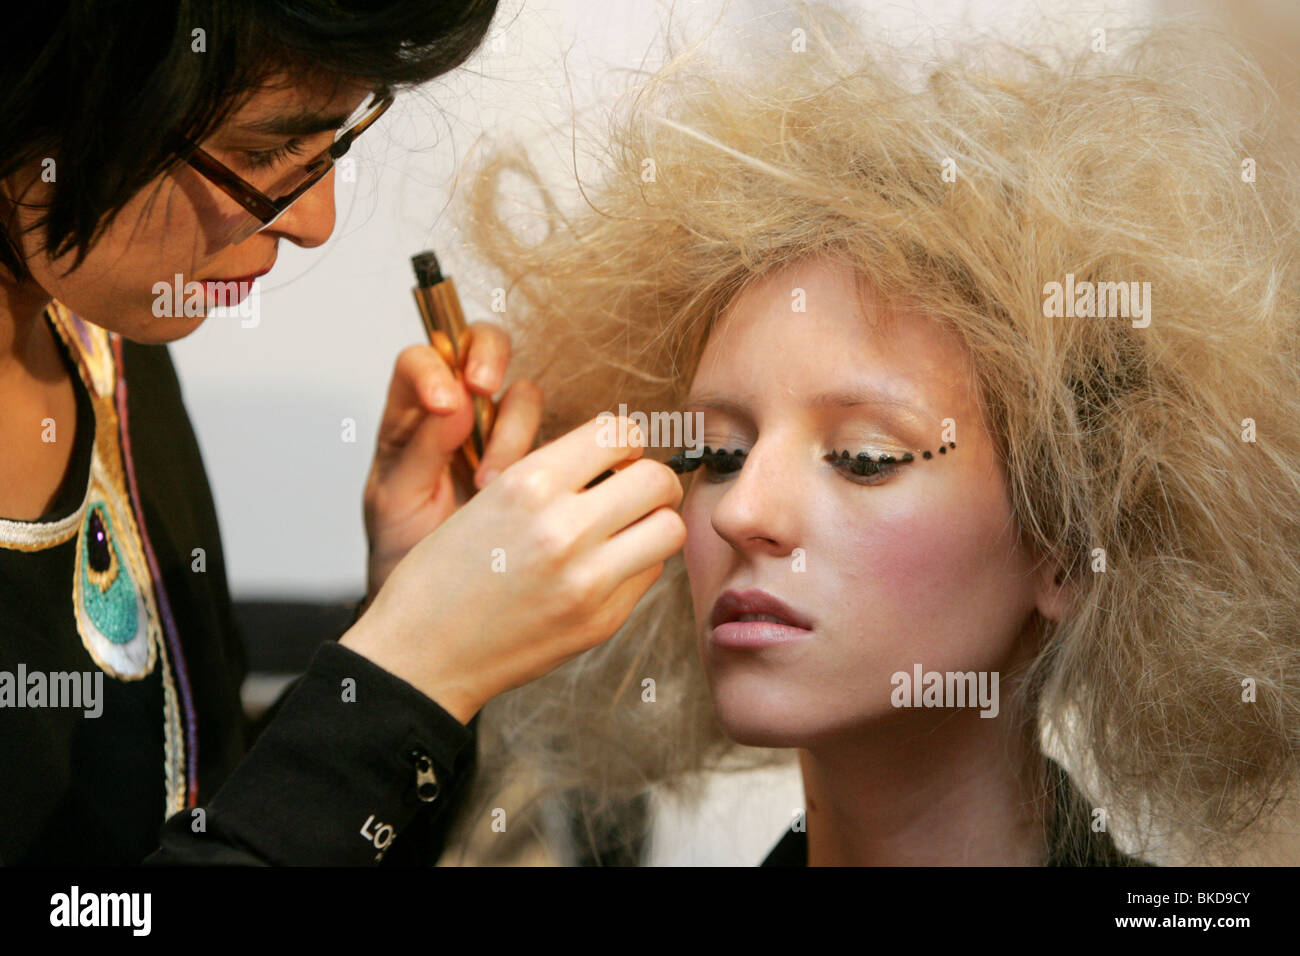 Make-up artist applying make-up on female model. Stock Photo